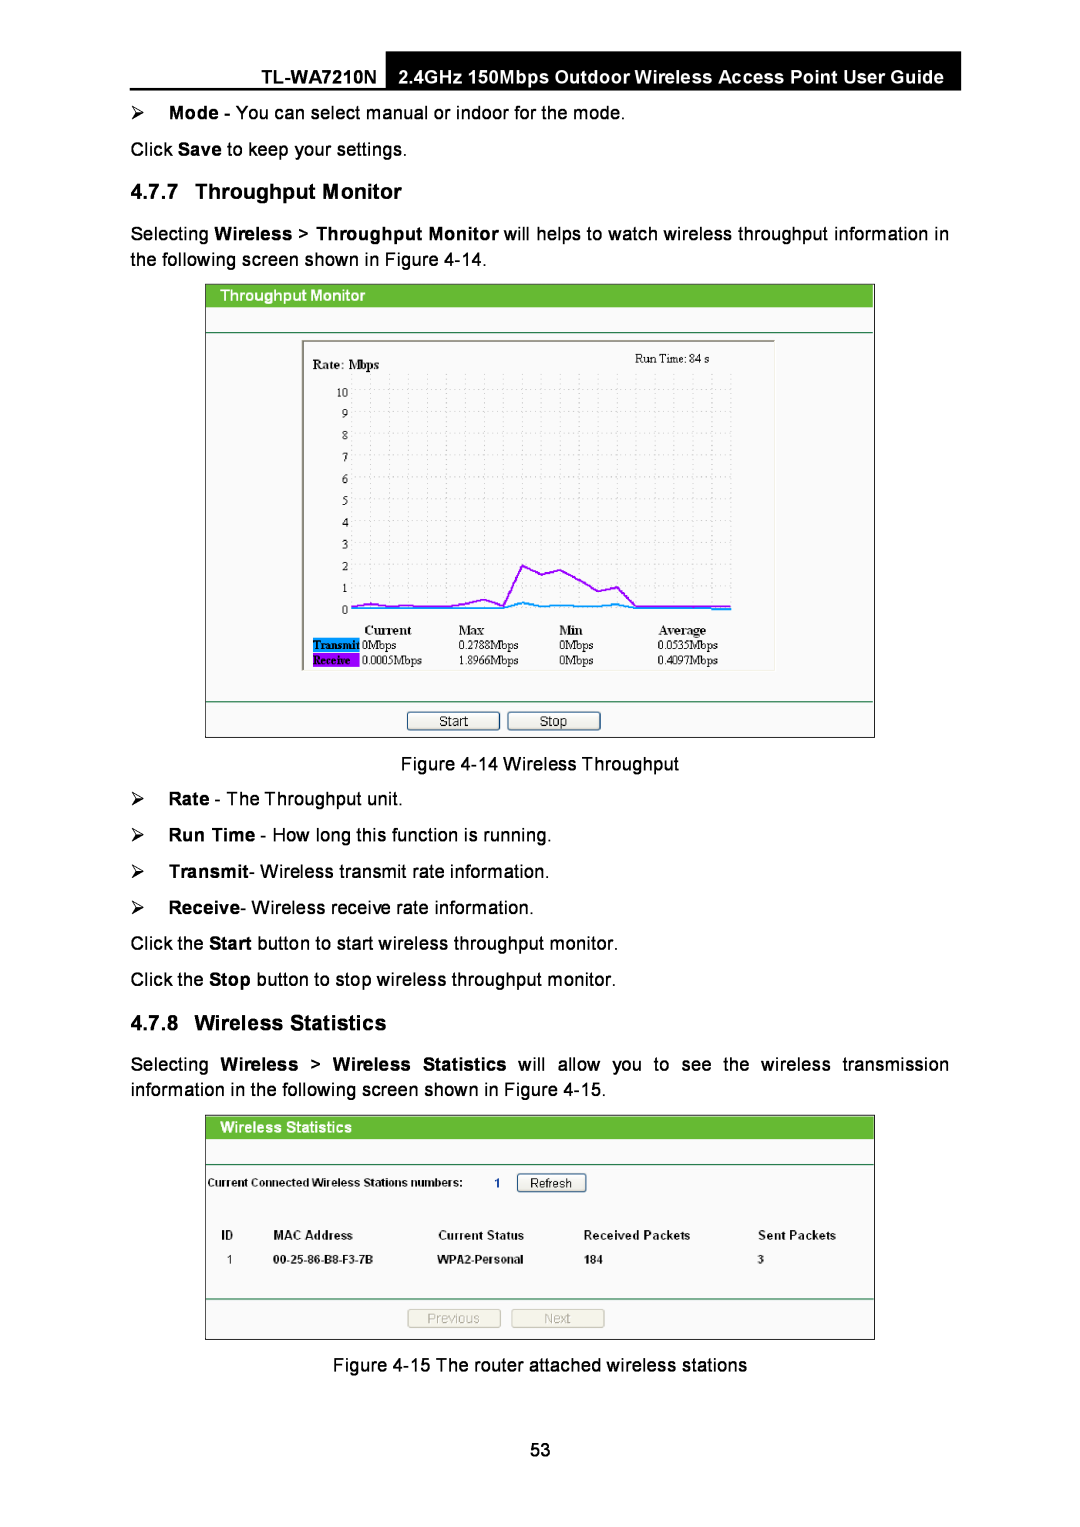 TP-Link TL-WA7210N manual Throughput Monitor, Wireless Statistics 